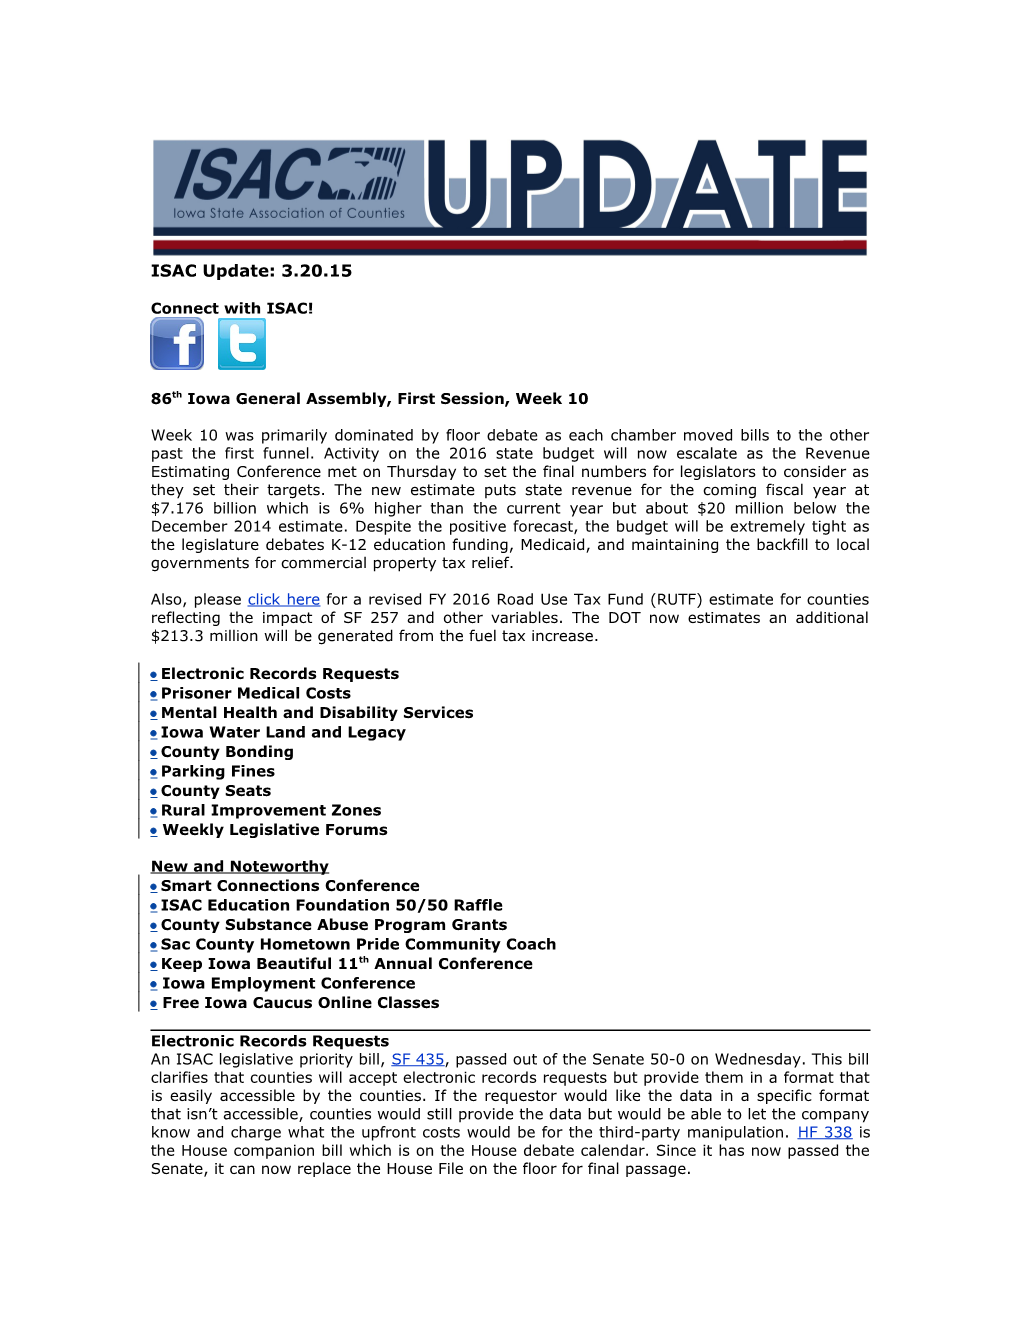 ISAC Legislative Update